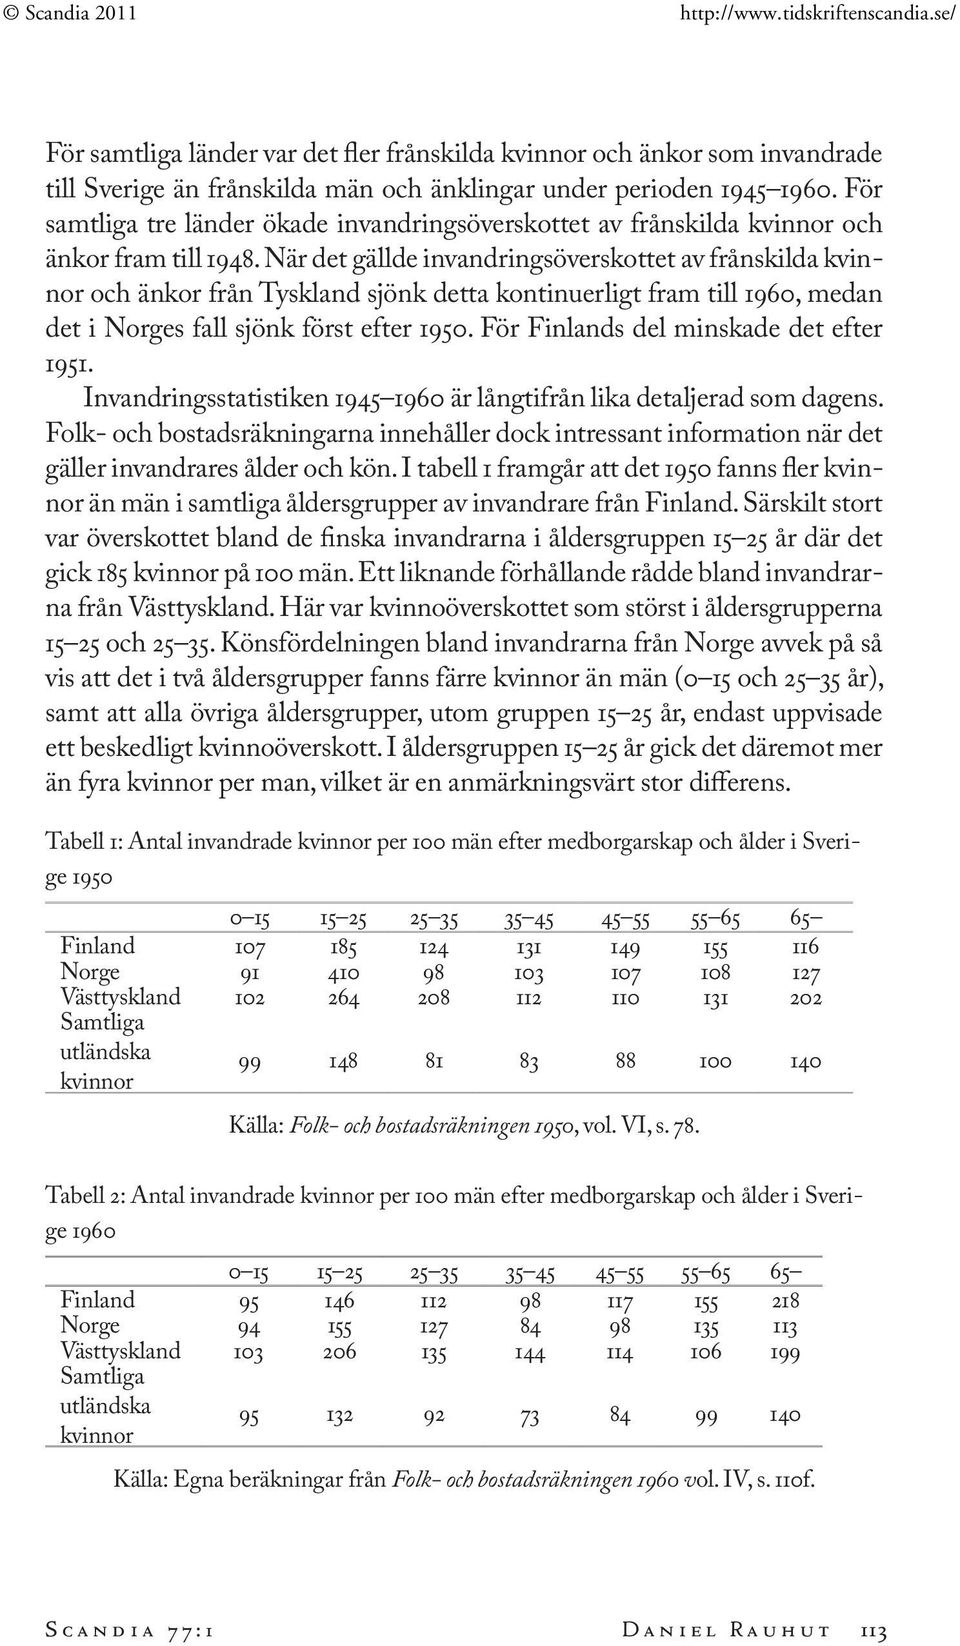 När det gällde invandringsöverskottet av frånskilda kvinnor och änkor från Tyskland sjönk detta kontinuerligt fram till 1960, medan det i Norges fall sjönk först efter 1950.